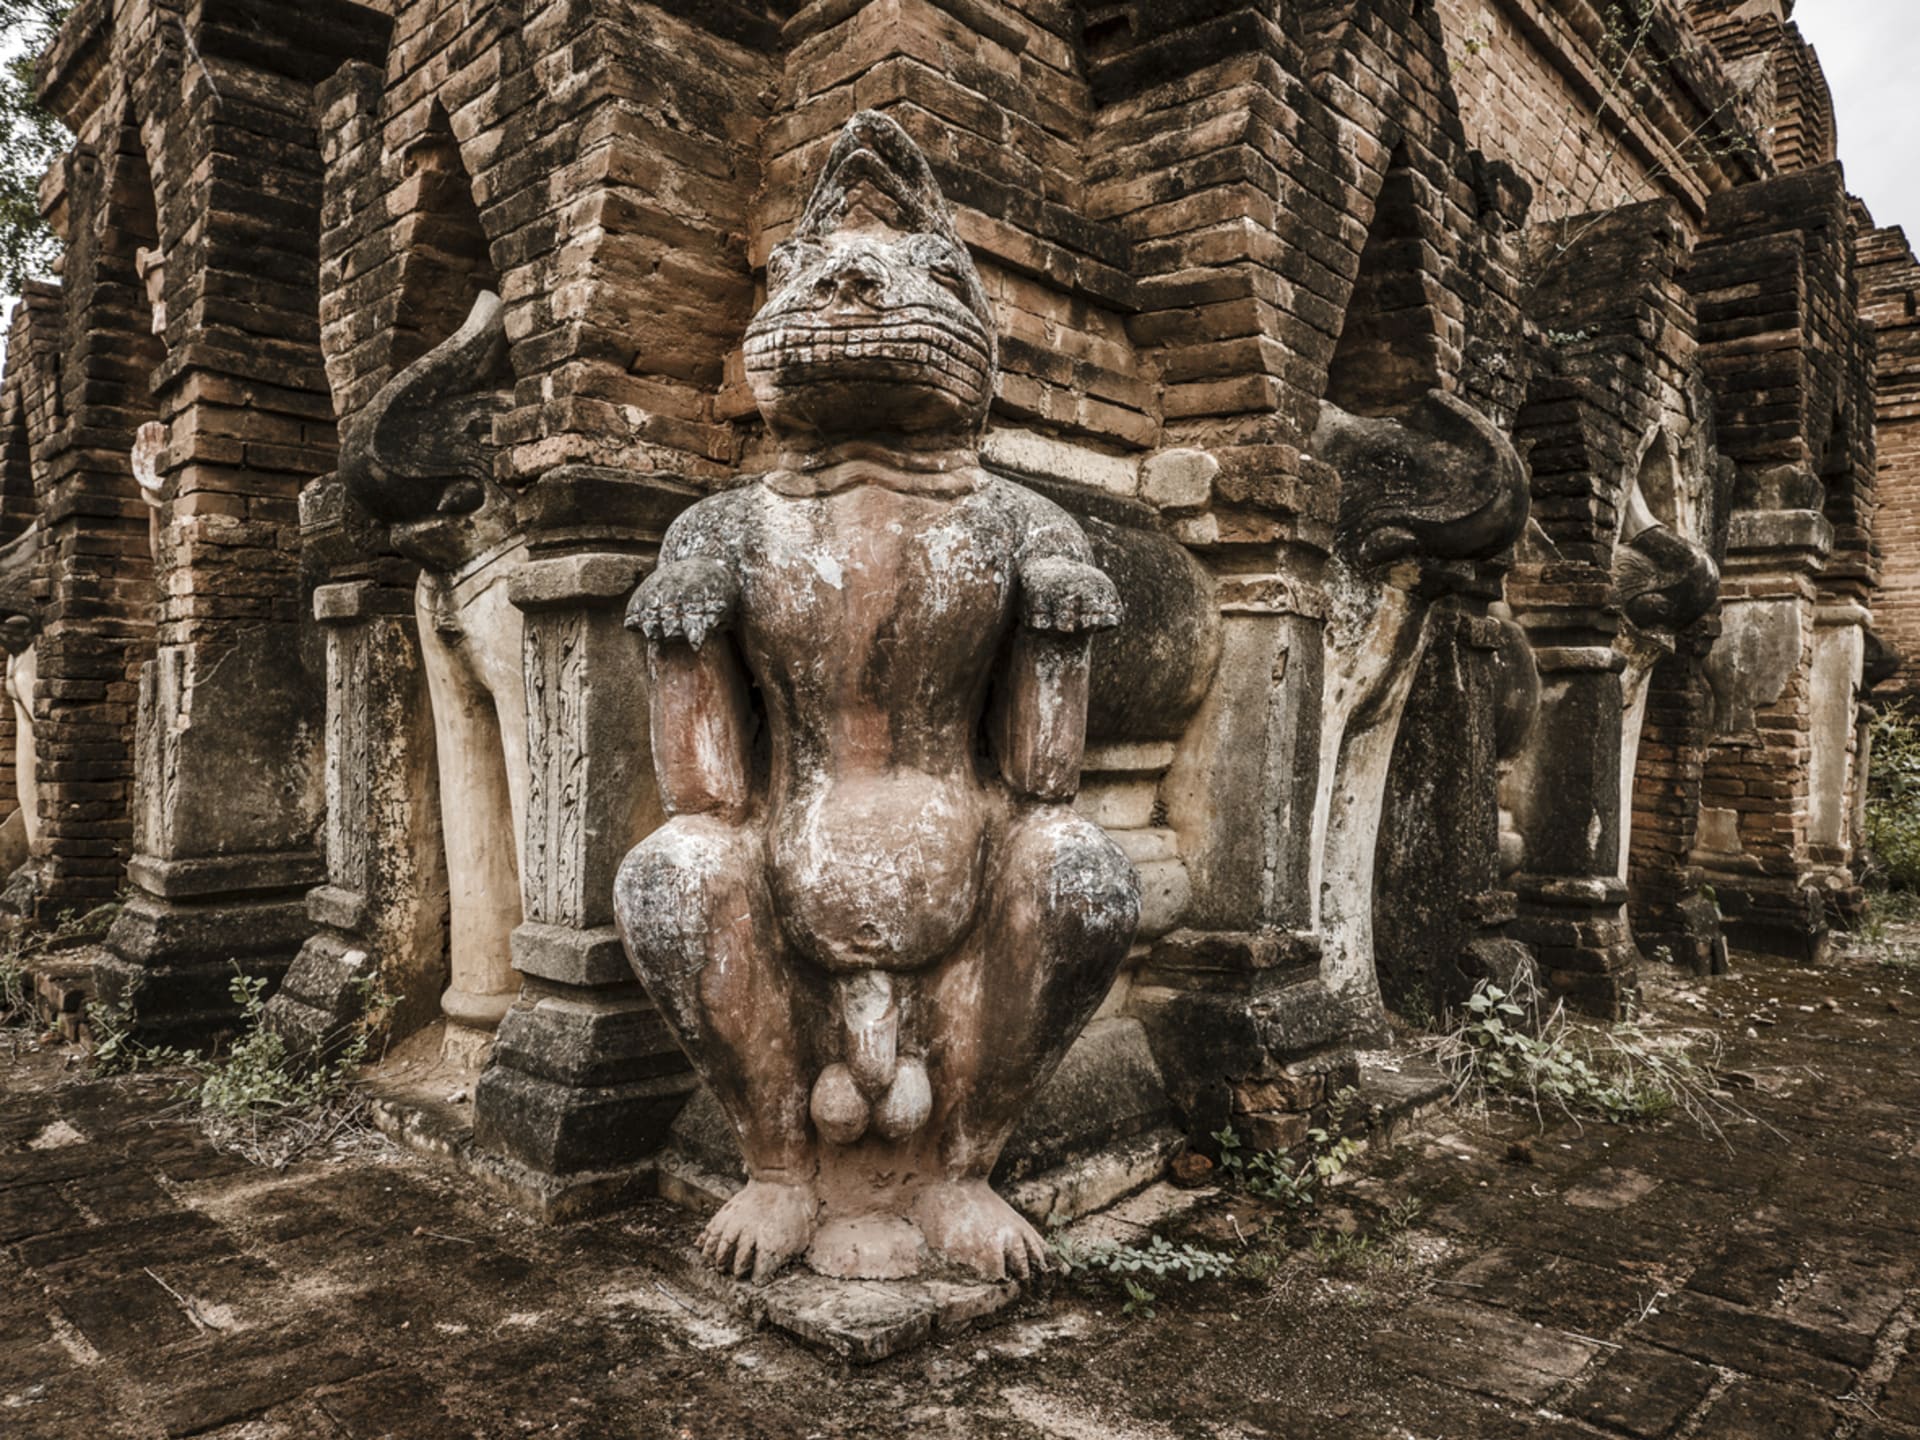 Penis pro naše předky nebyl zakázaným tématem k zobrazení: starodávná socha v Myanmaru